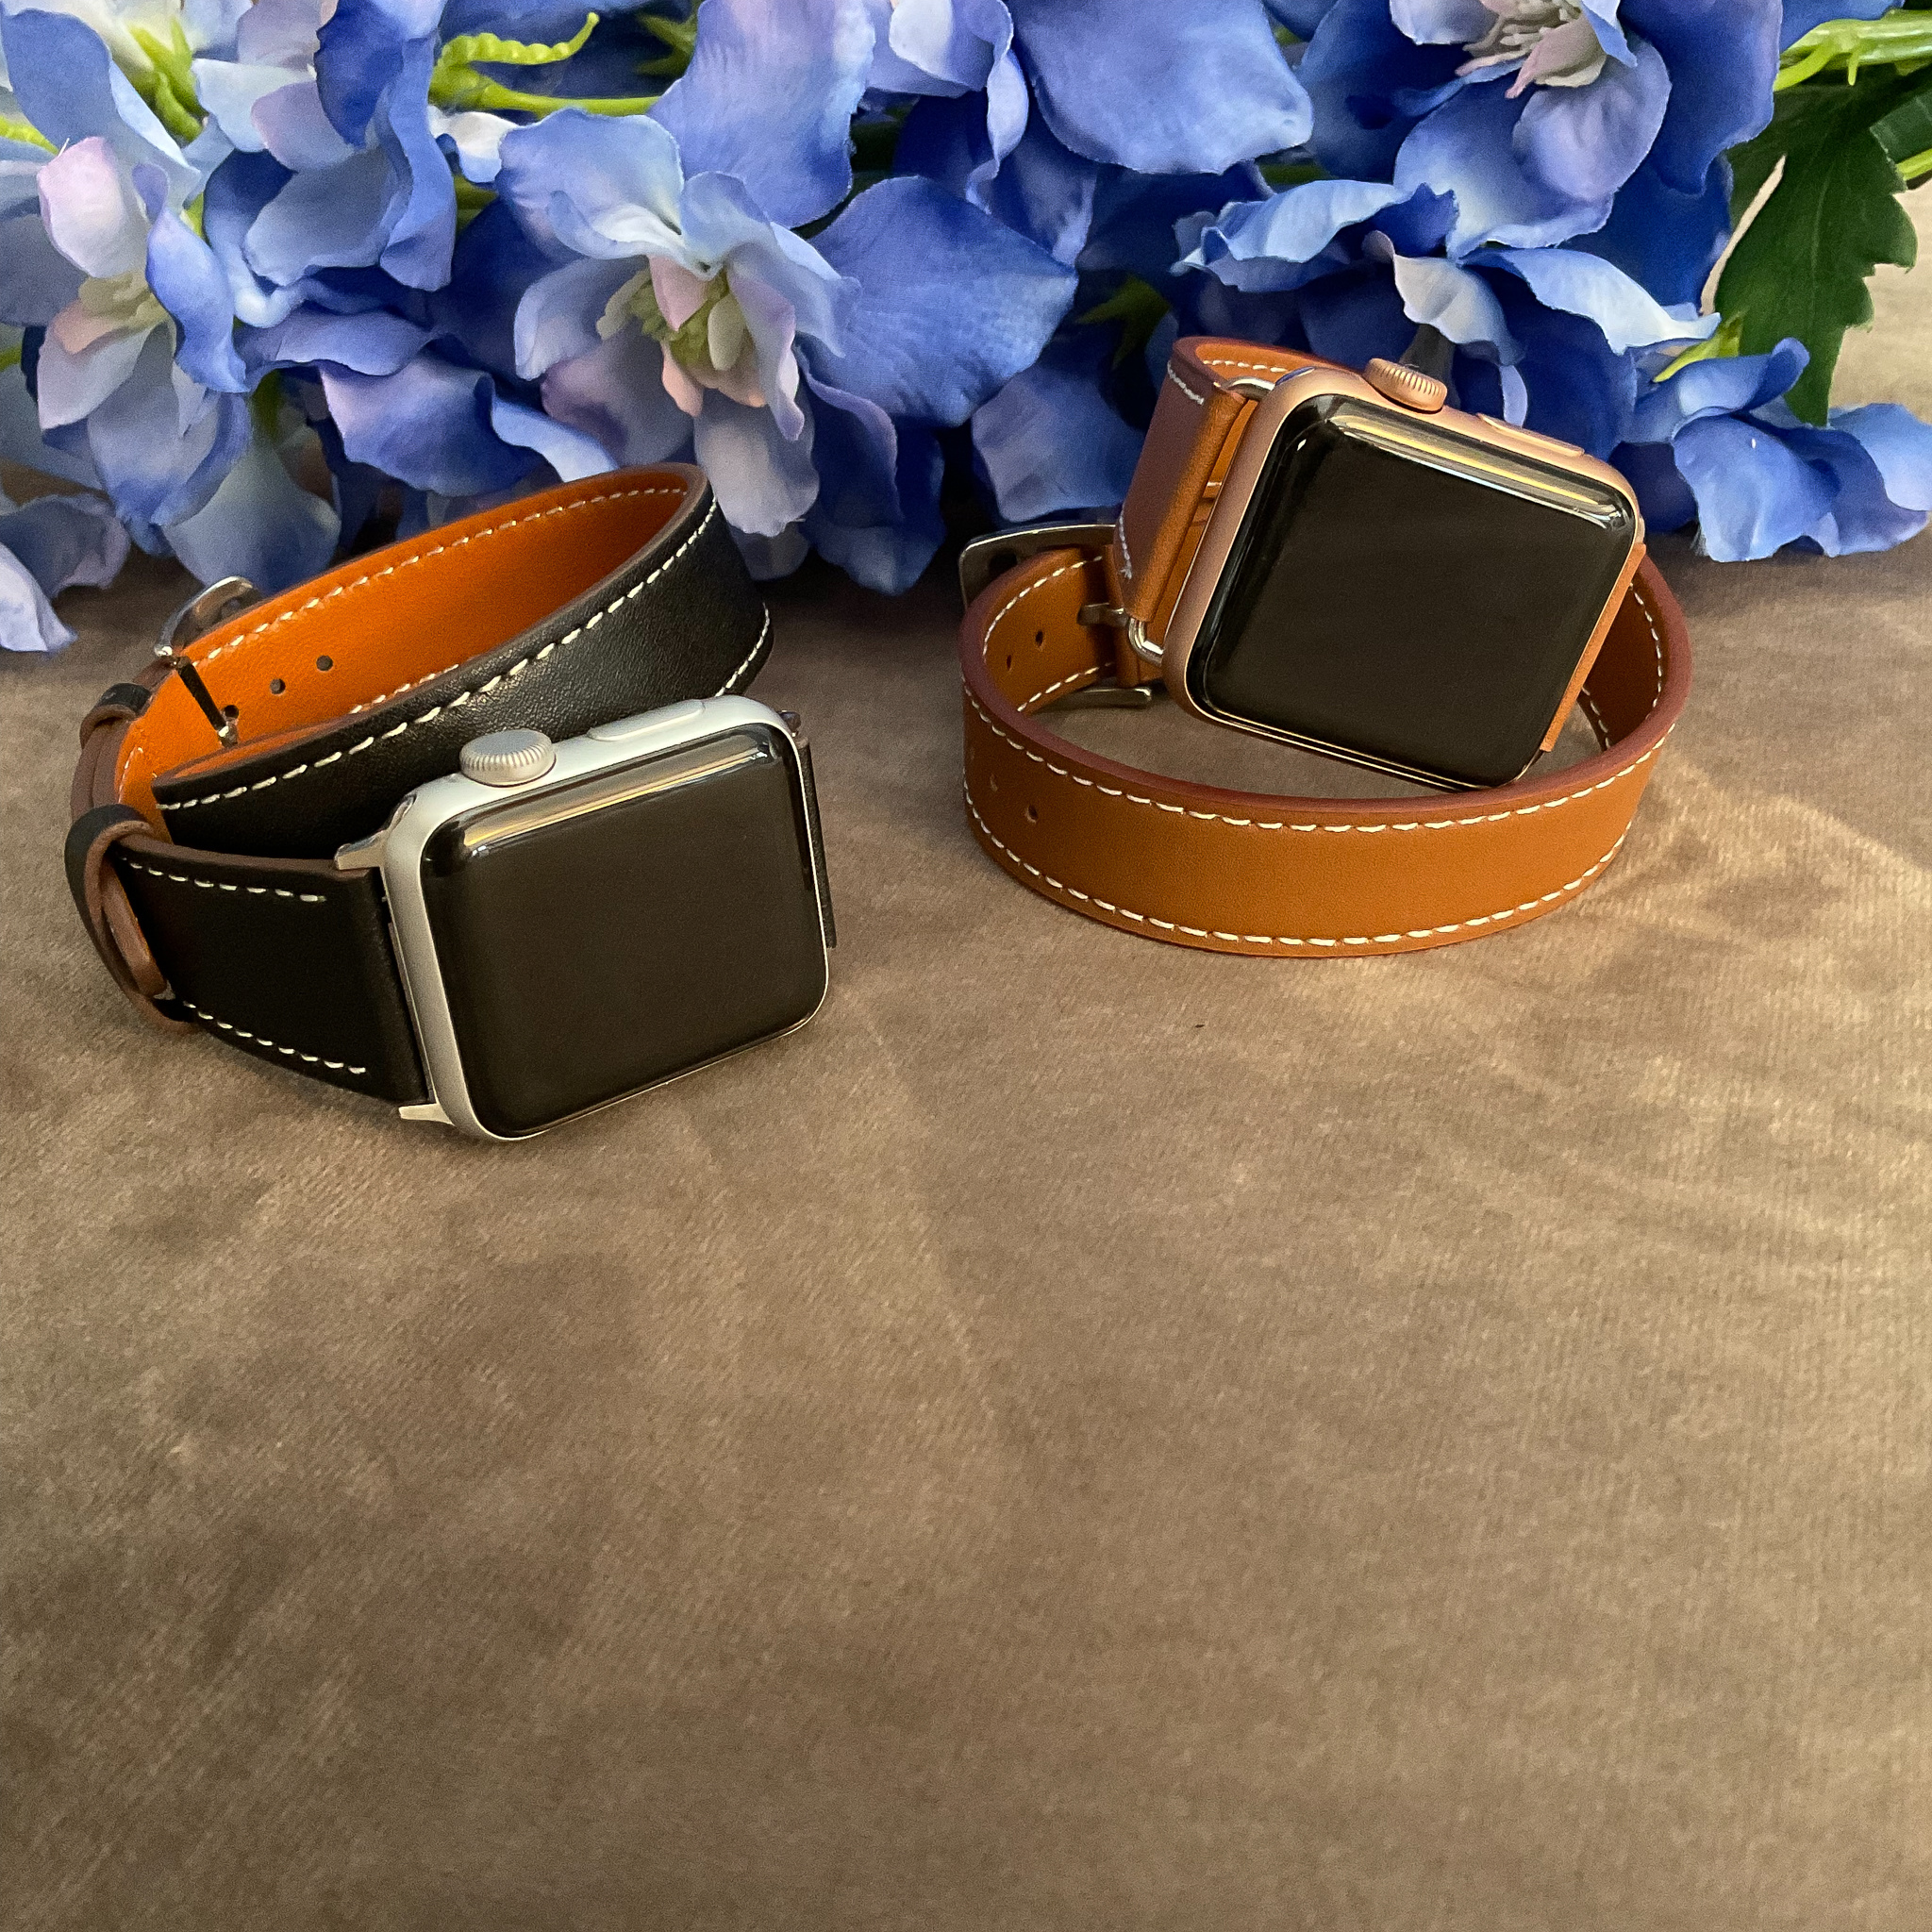 Bracelet en cuir ceinture longue Apple Watch - marron